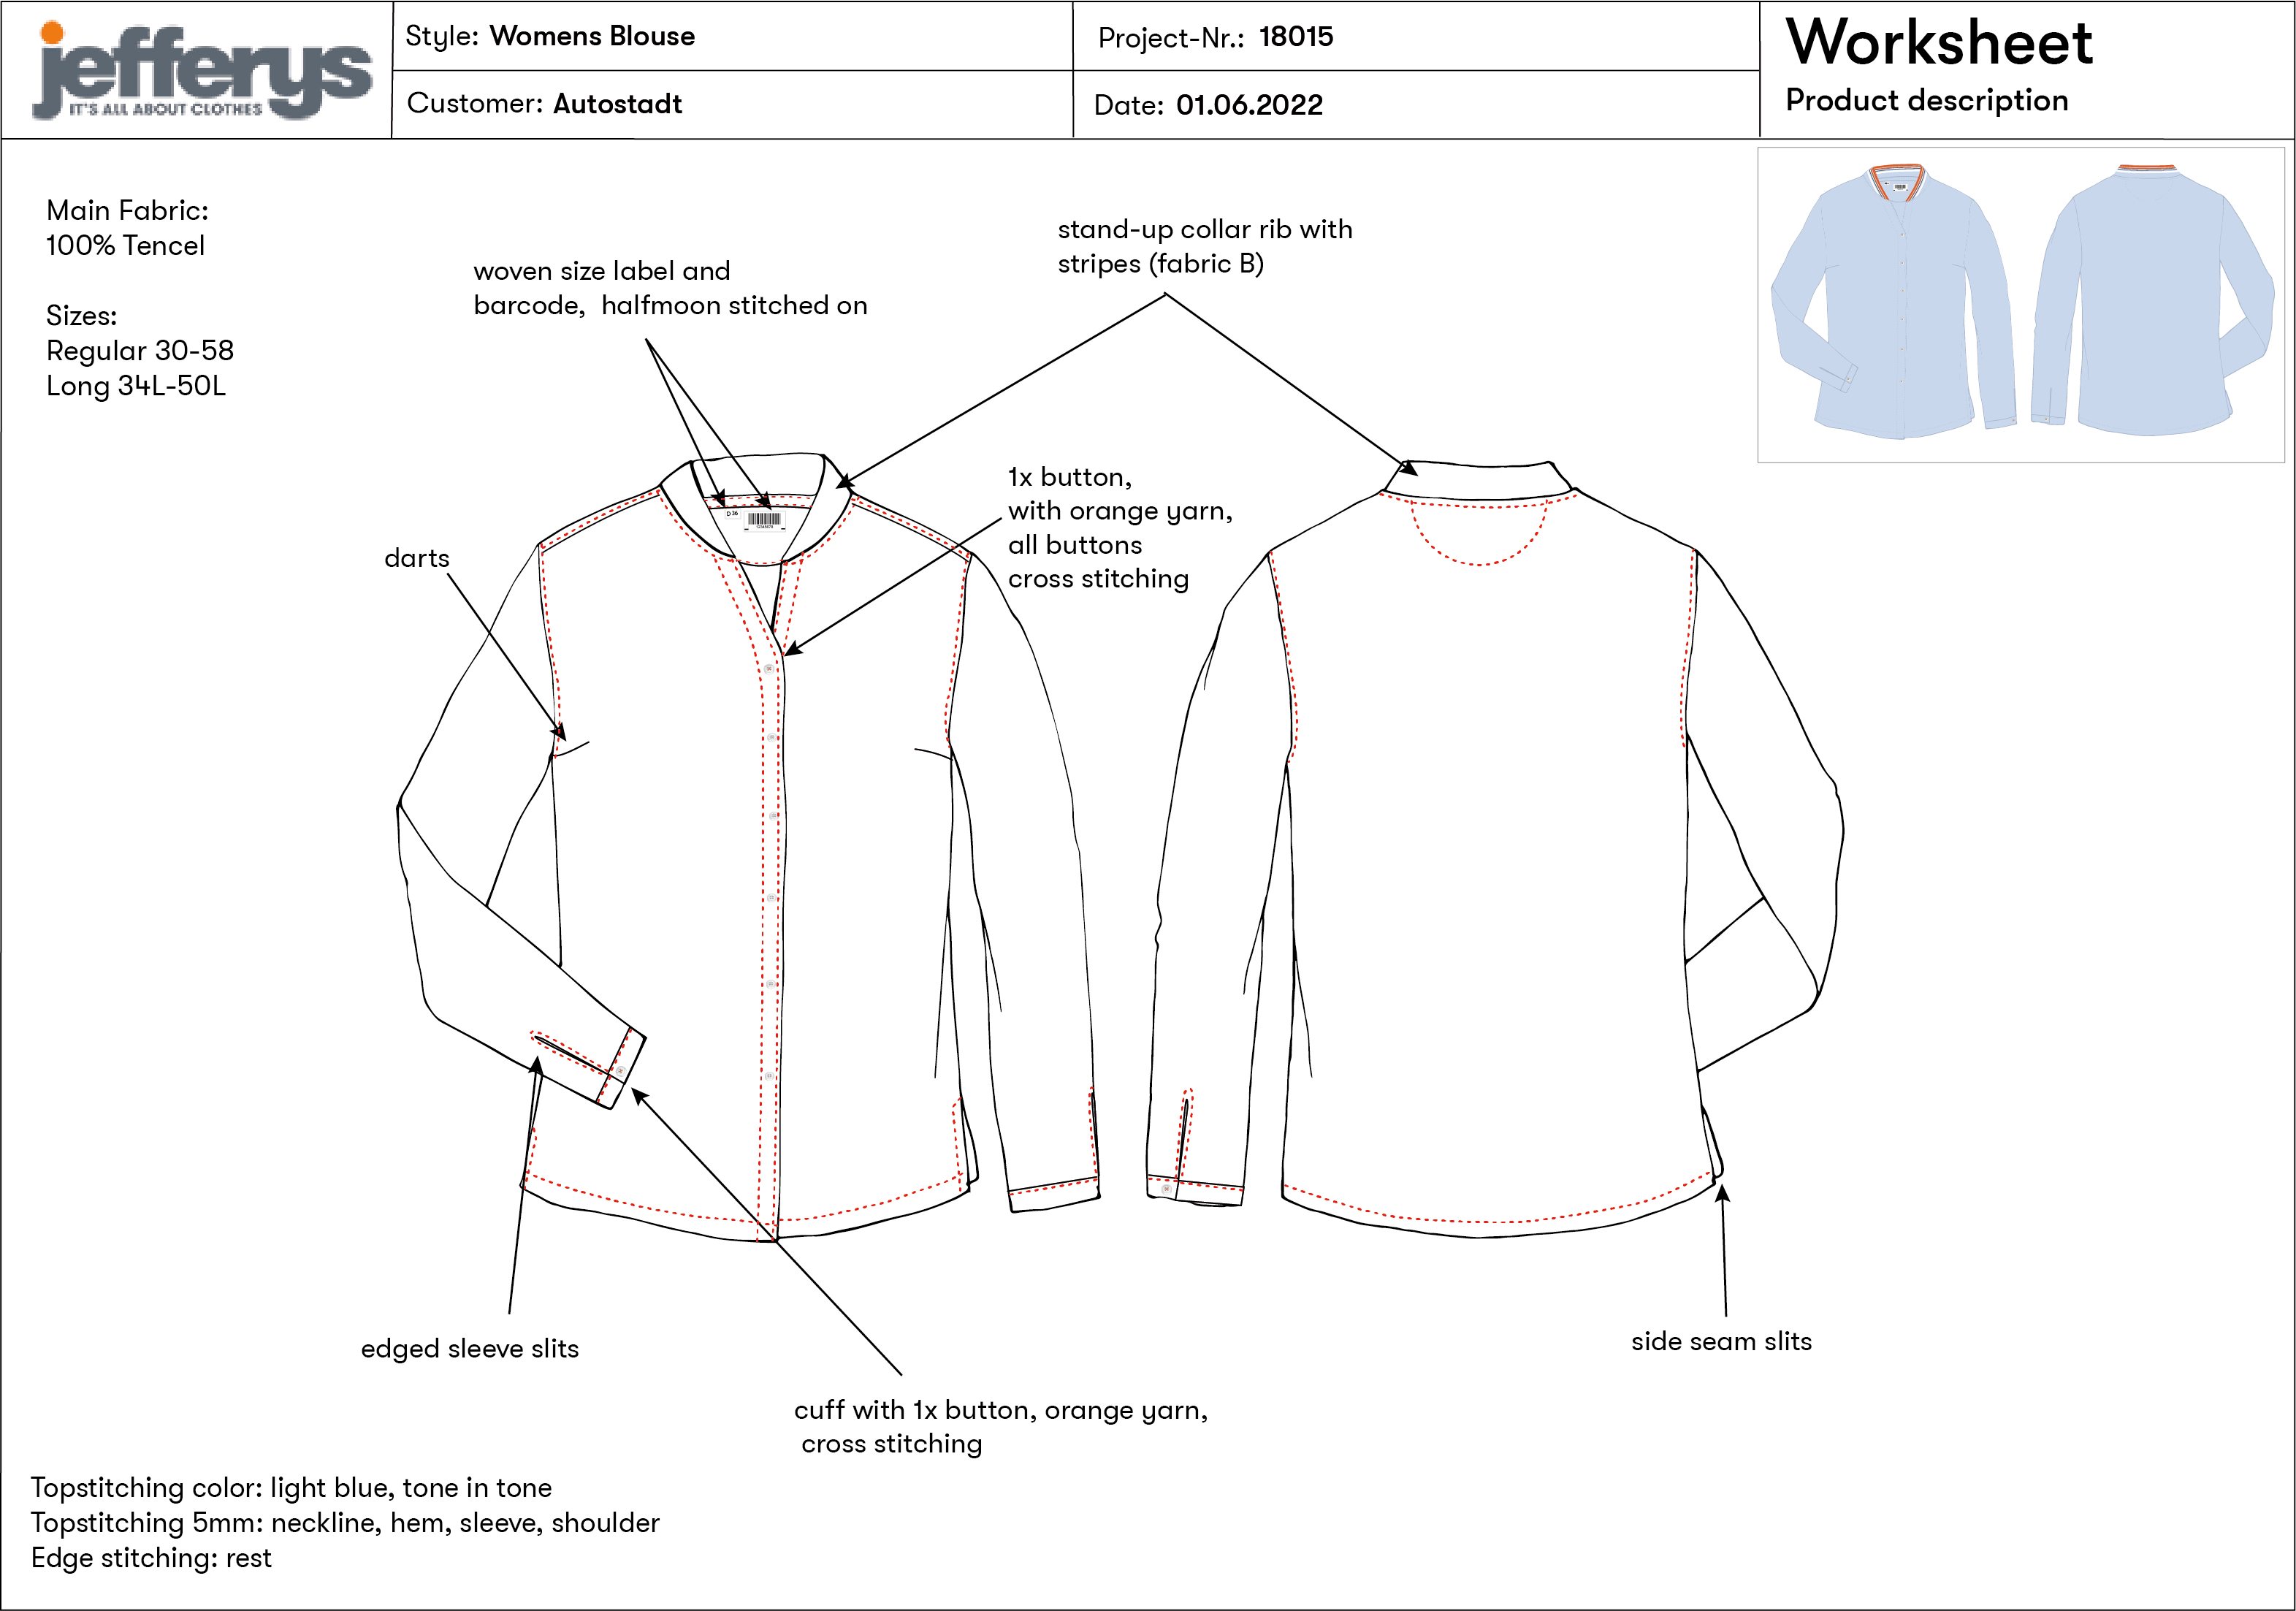 Worksheet für die Produktion von einem Hemd mit Anmerkungen